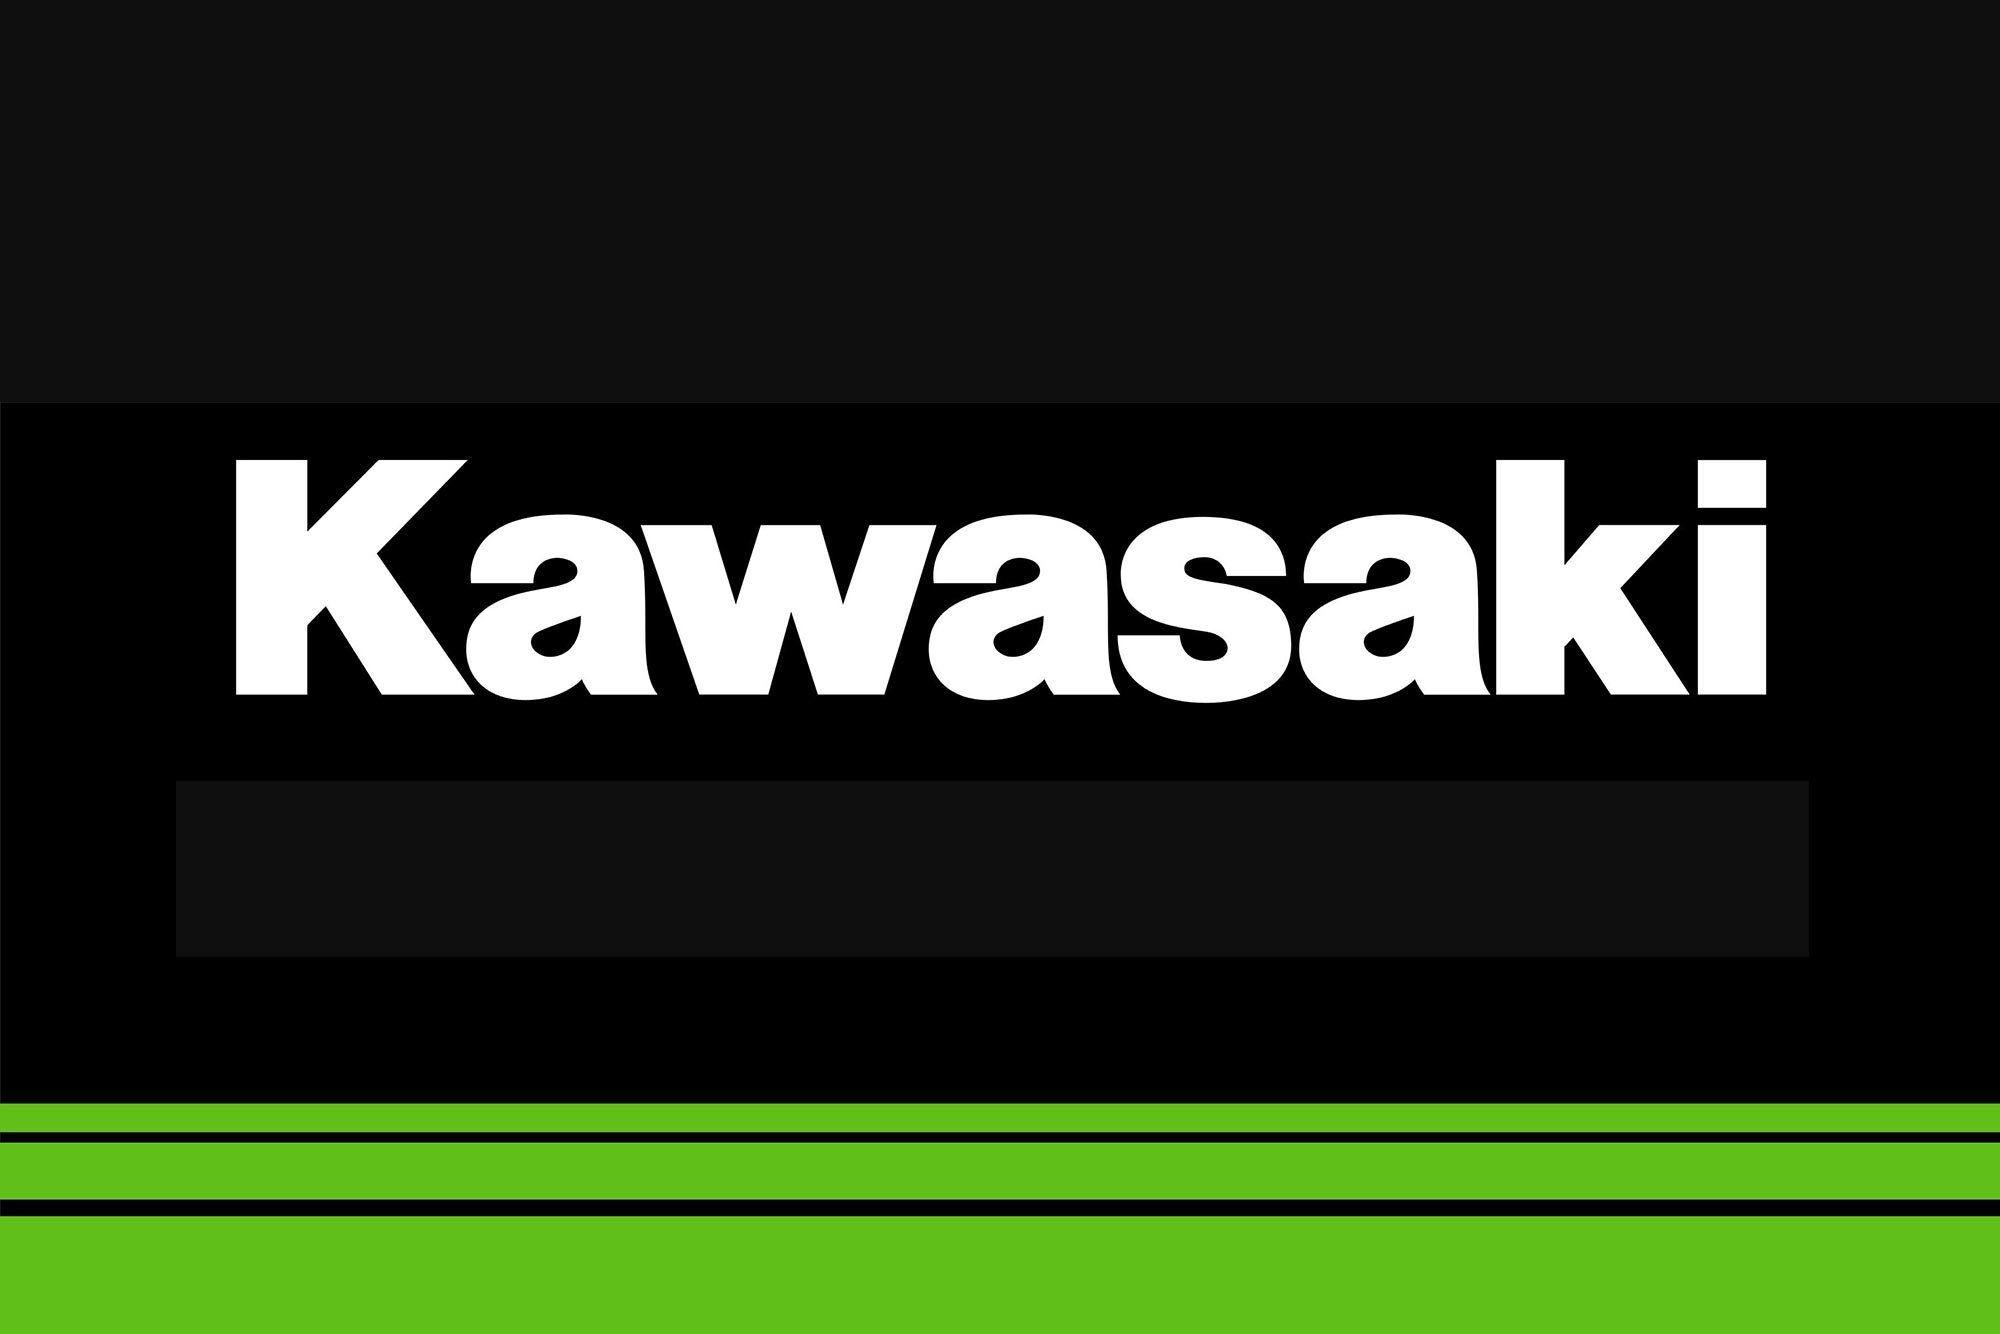 2018 Kawasaki Logo - Kawasaki Ninja 400 Coming to the USA for 2018 - Asphalt & Rubber